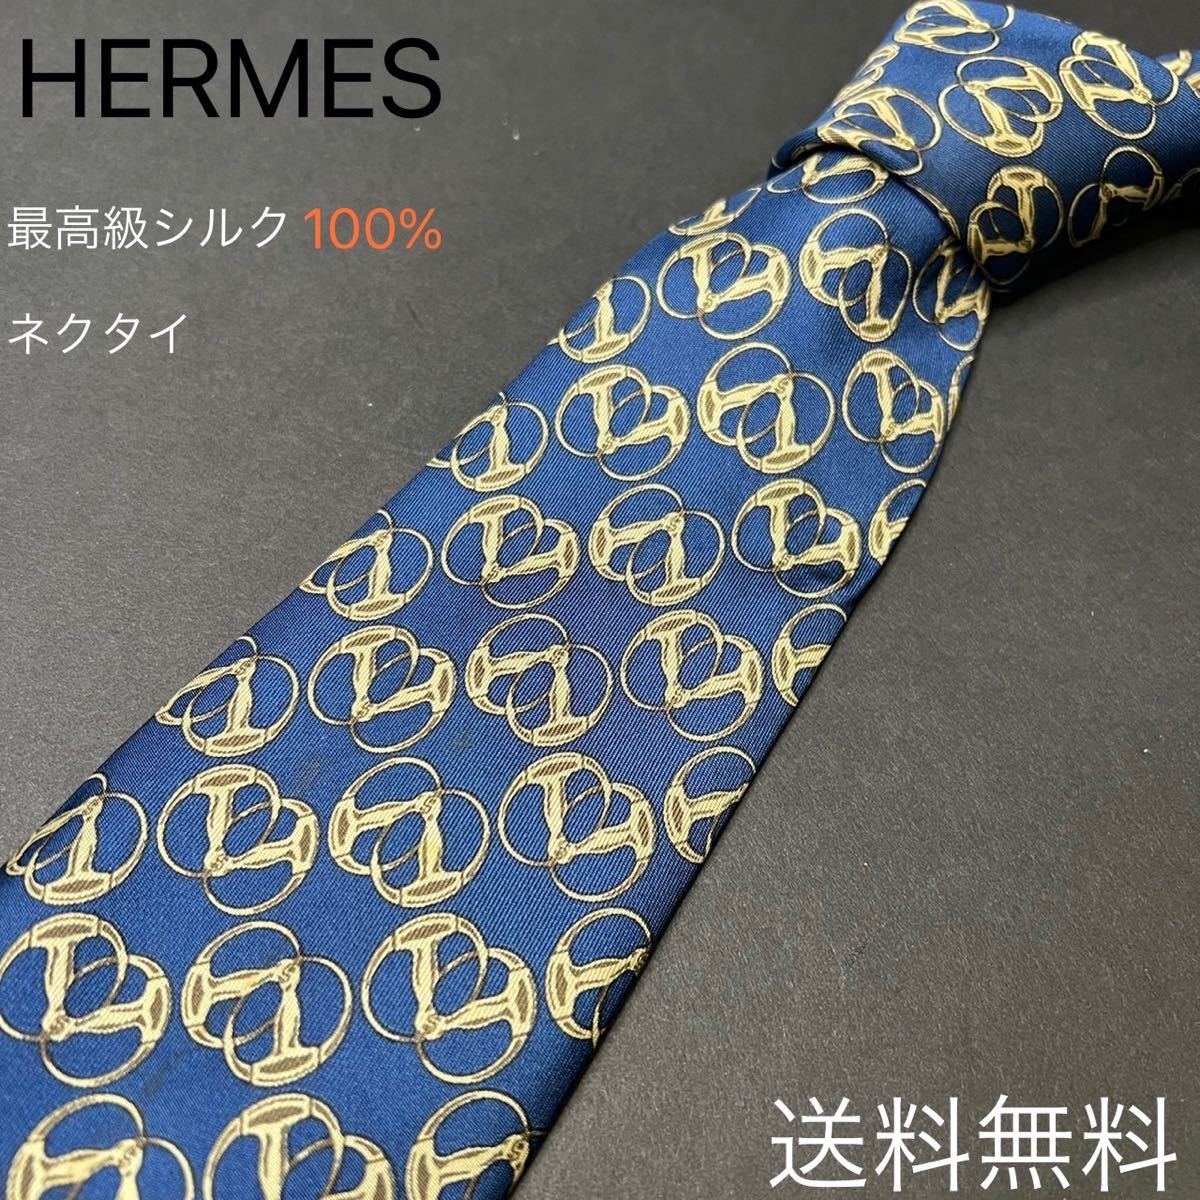 ネクタイ エルメス HERMES 最高級ブランド 高級シルク ビジネス 